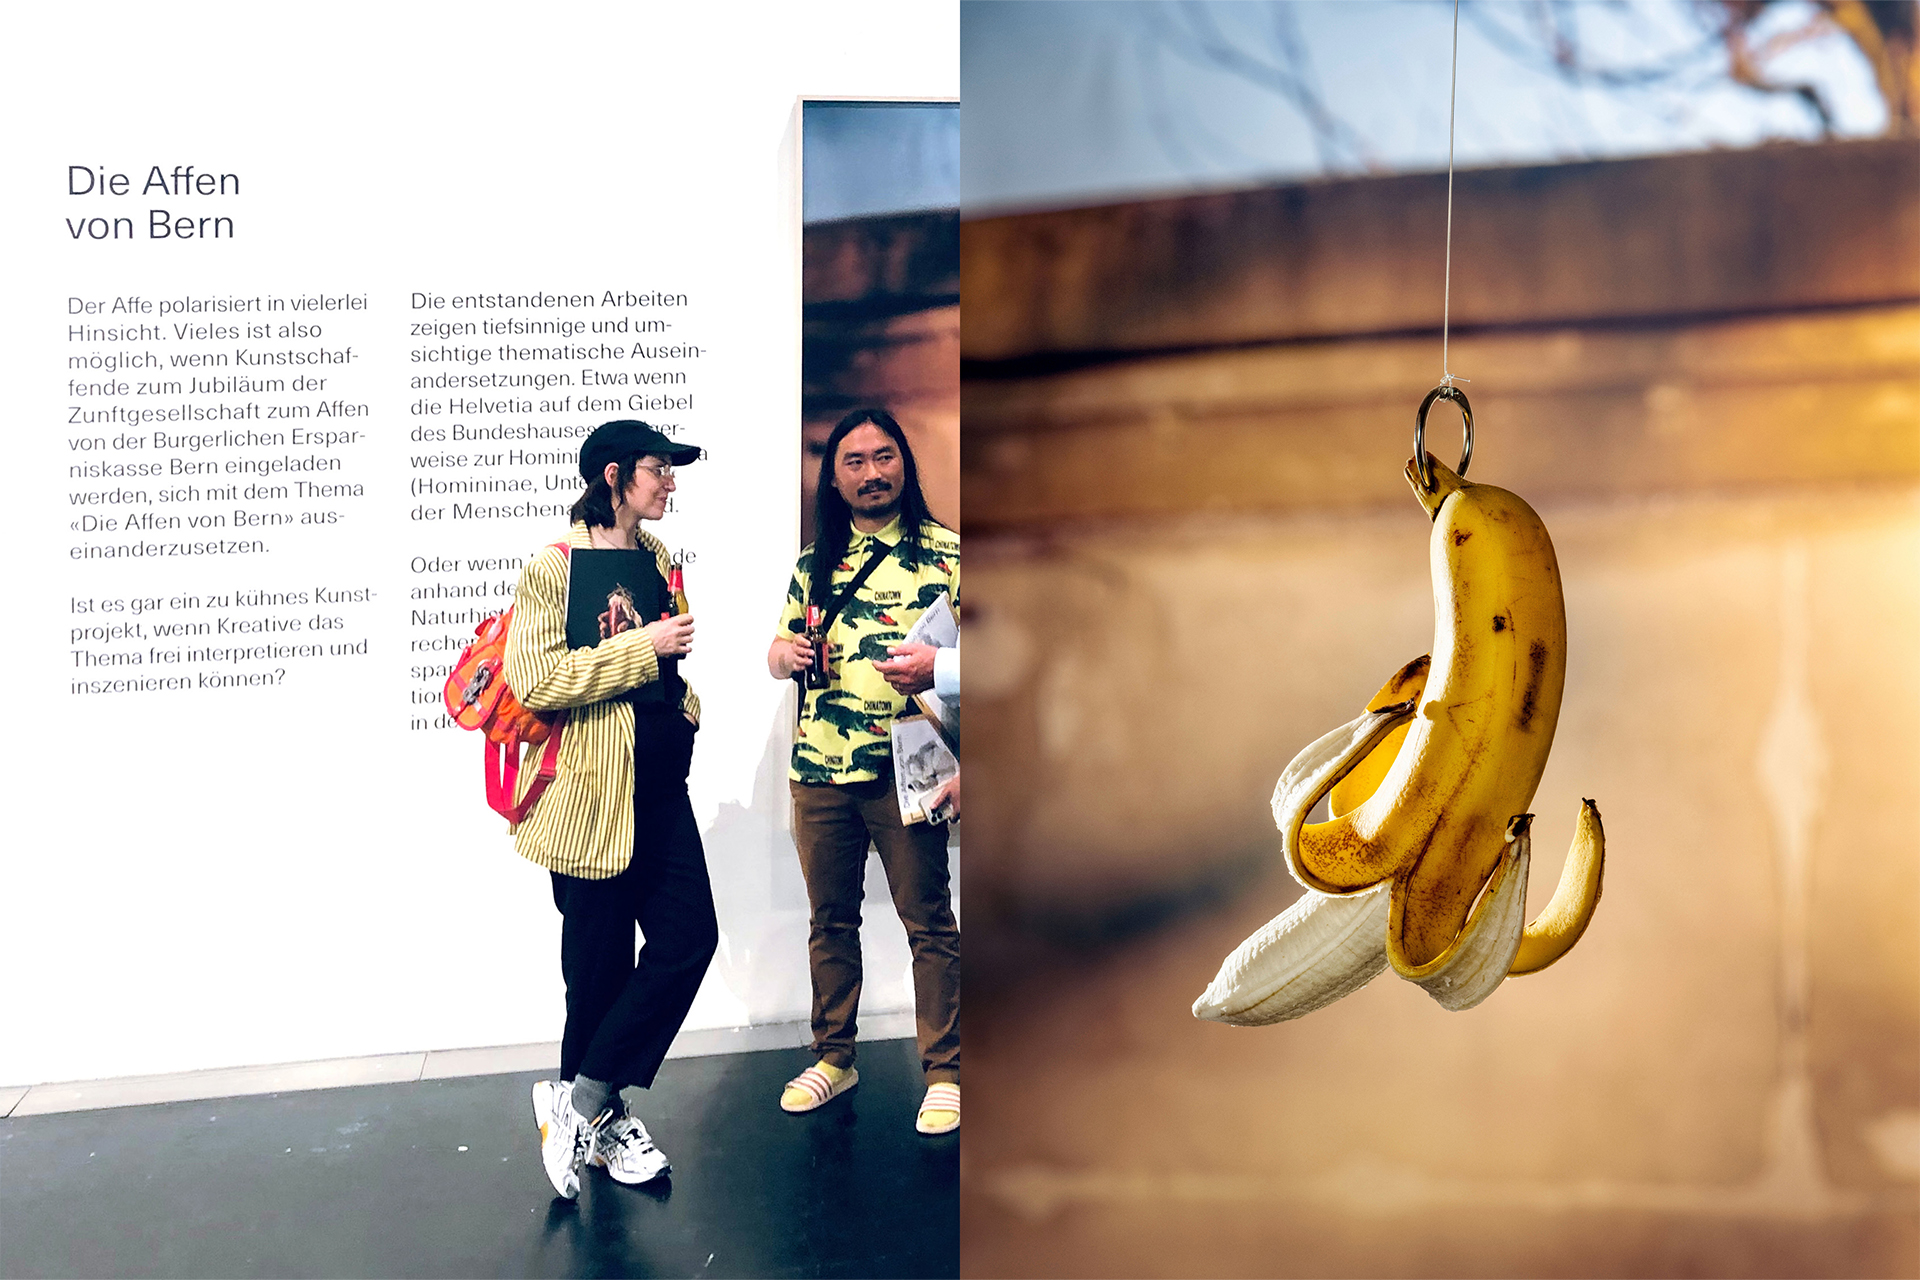 BEK Ausstellung & Bild banane